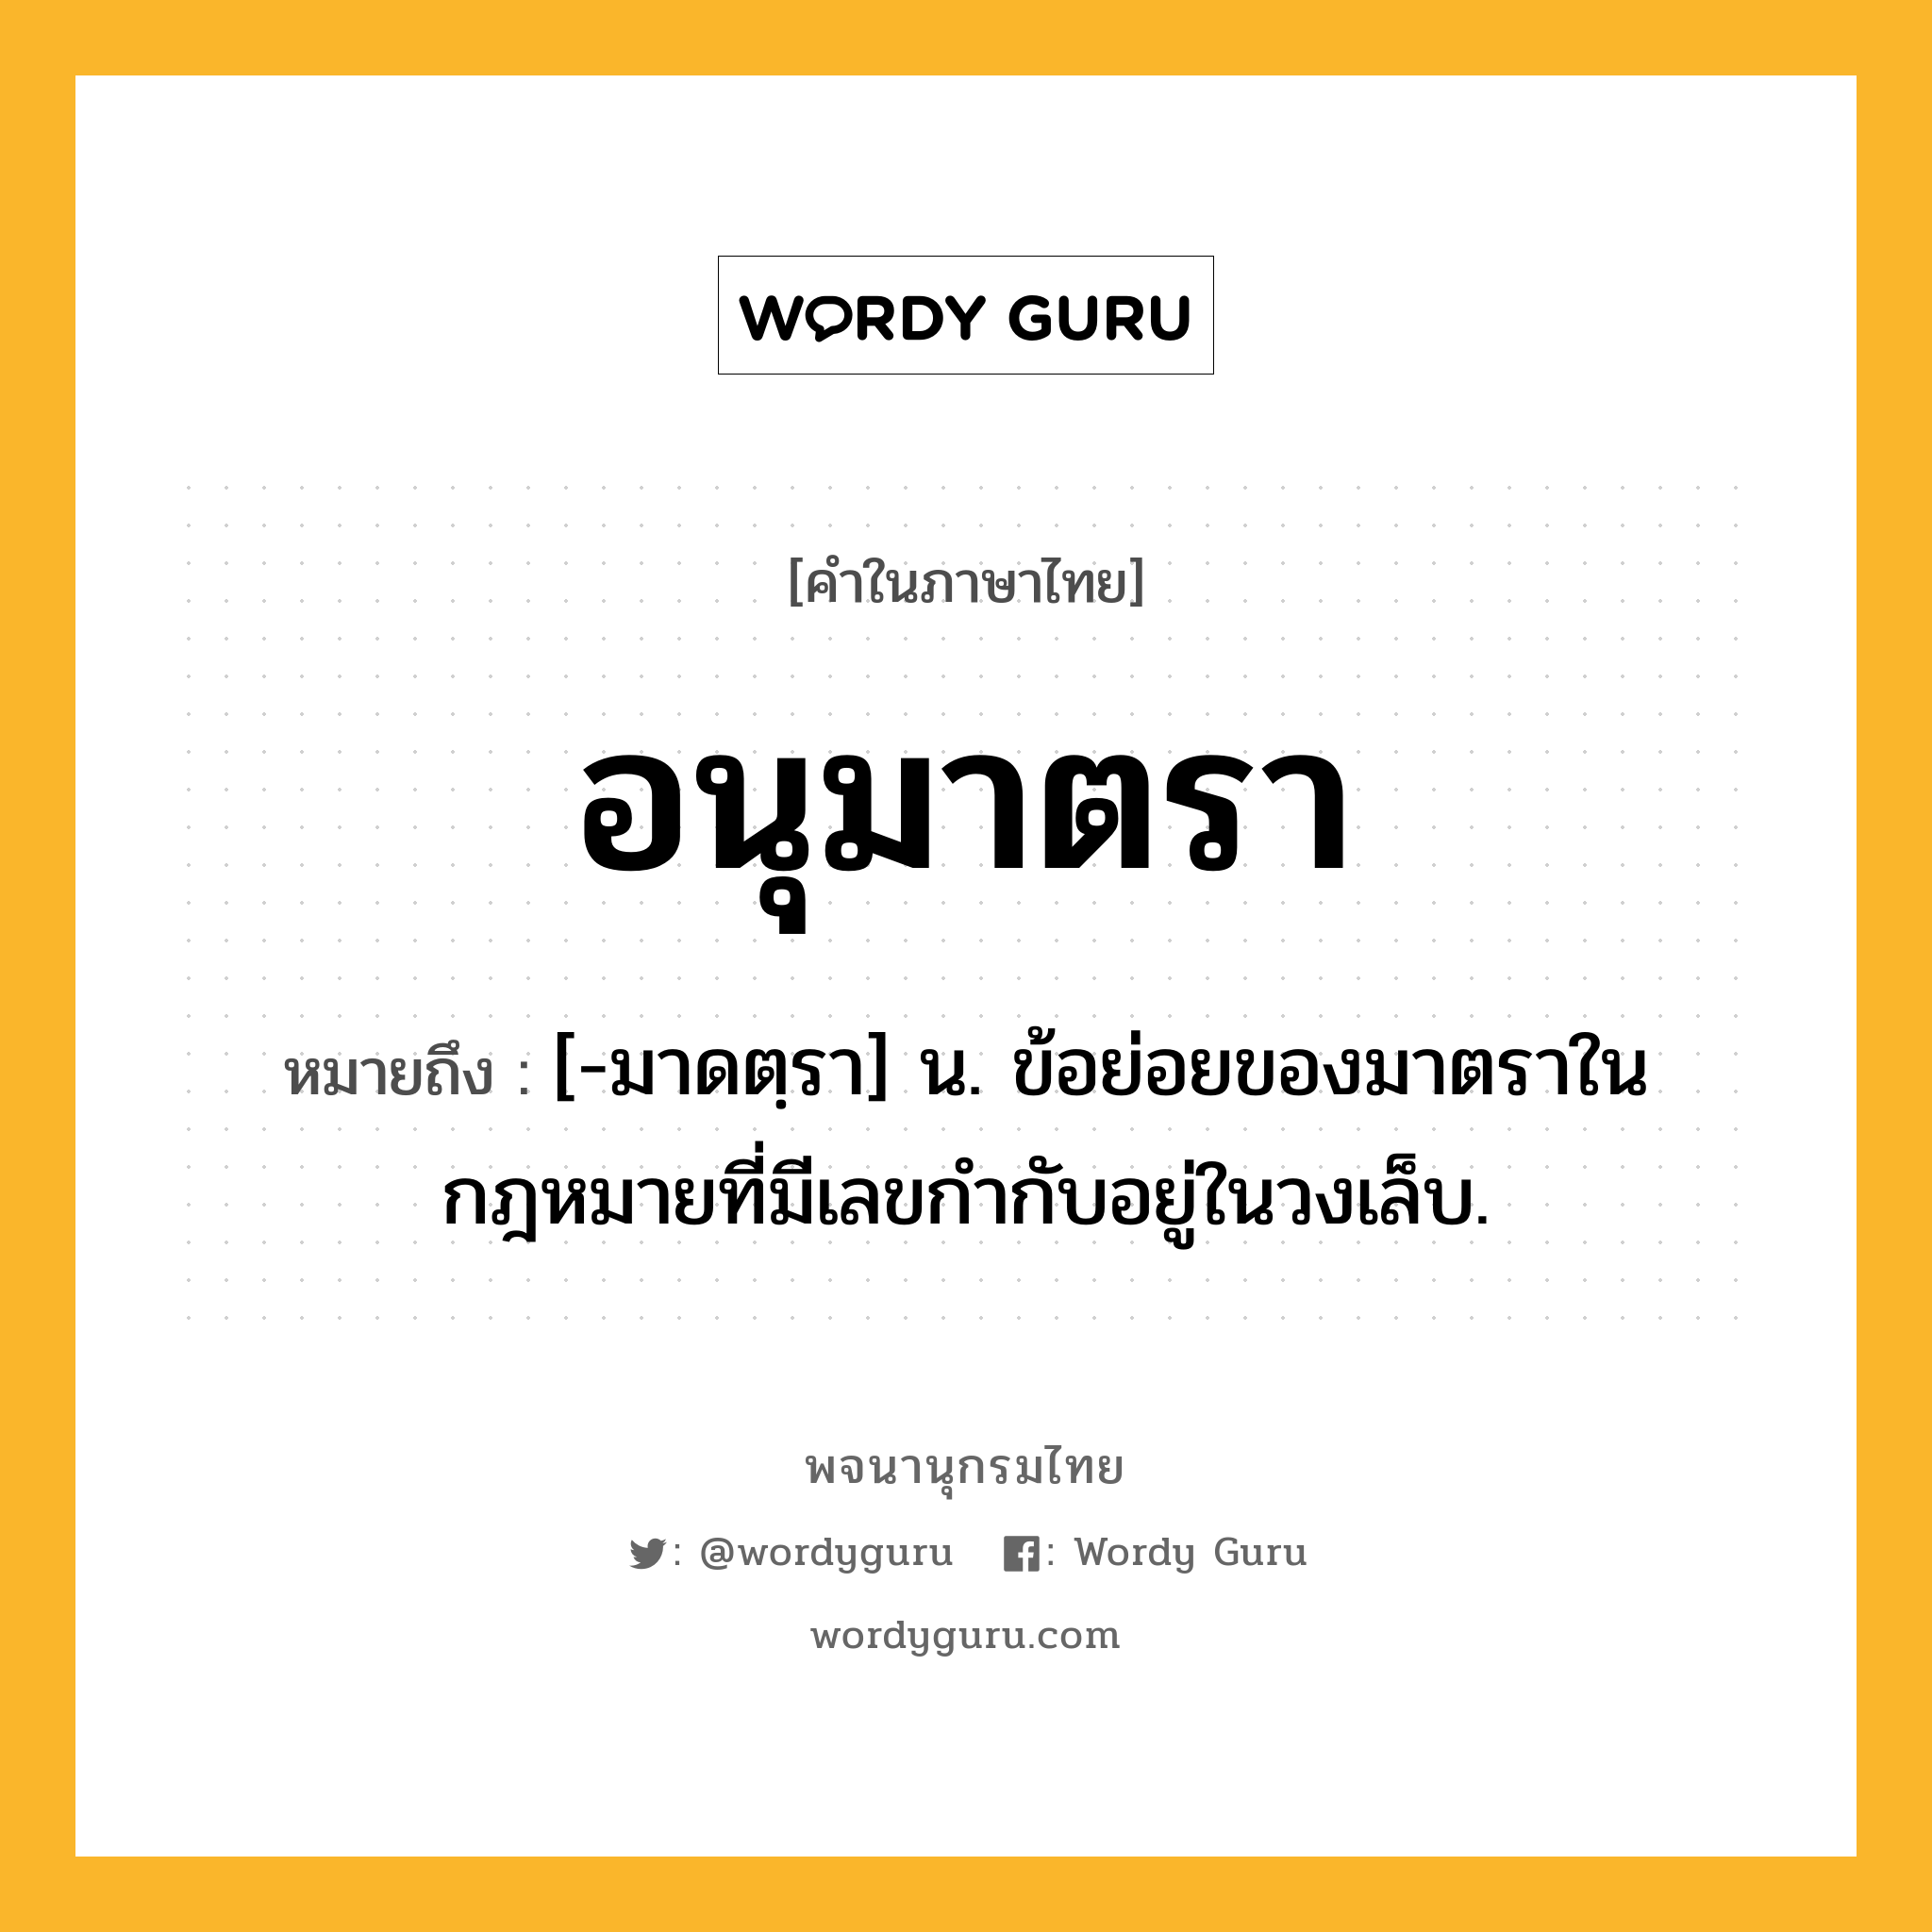 อนุมาตรา ความหมาย หมายถึงอะไร?, คำในภาษาไทย อนุมาตรา หมายถึง [-มาดตฺรา] น. ข้อย่อยของมาตราในกฎหมายที่มีเลขกำกับอยู่ในวงเล็บ.